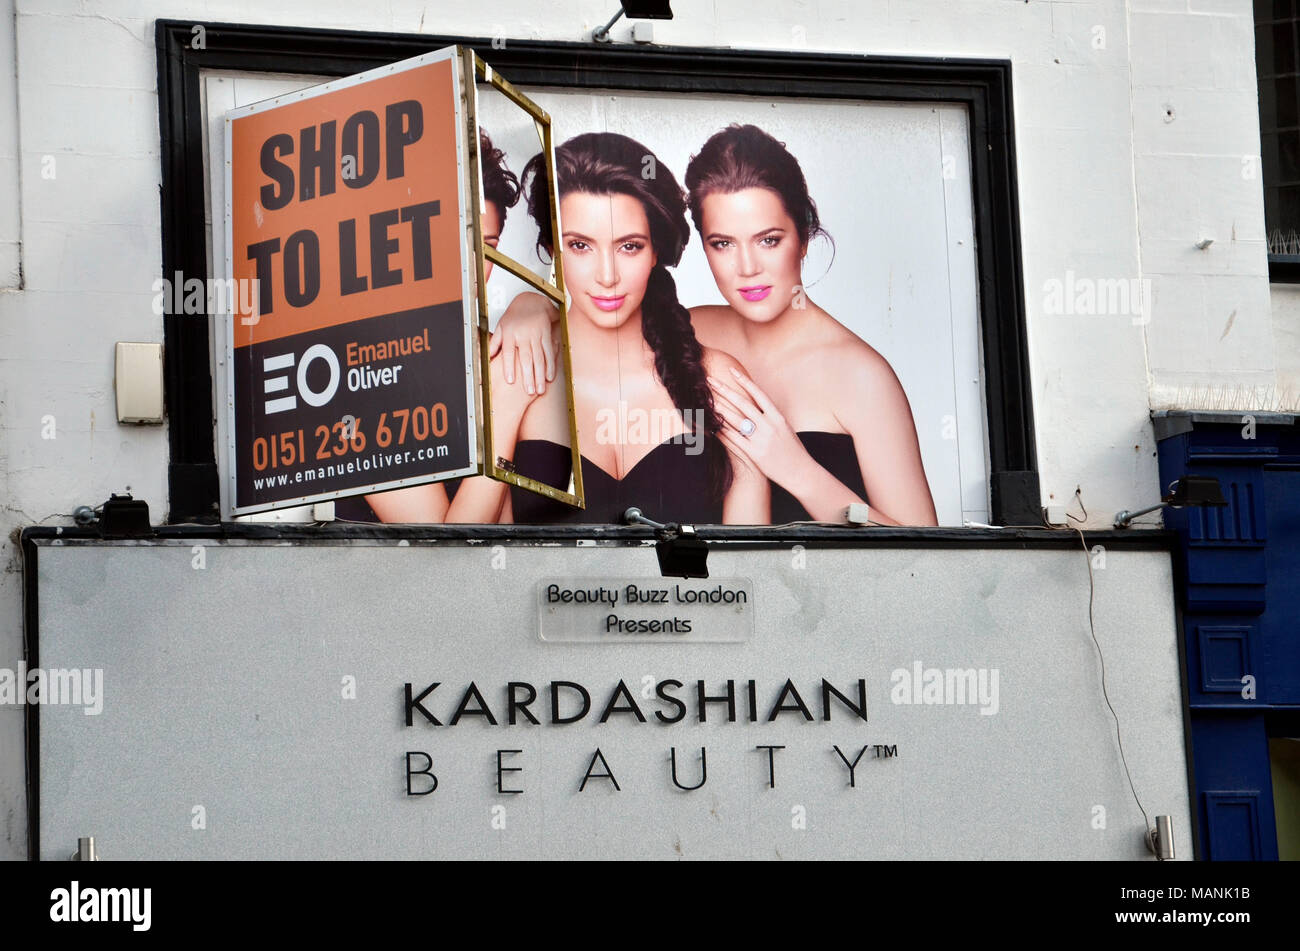 Fermé le Kardashian de beauté à Liverpool, en Angleterre Banque D'Images